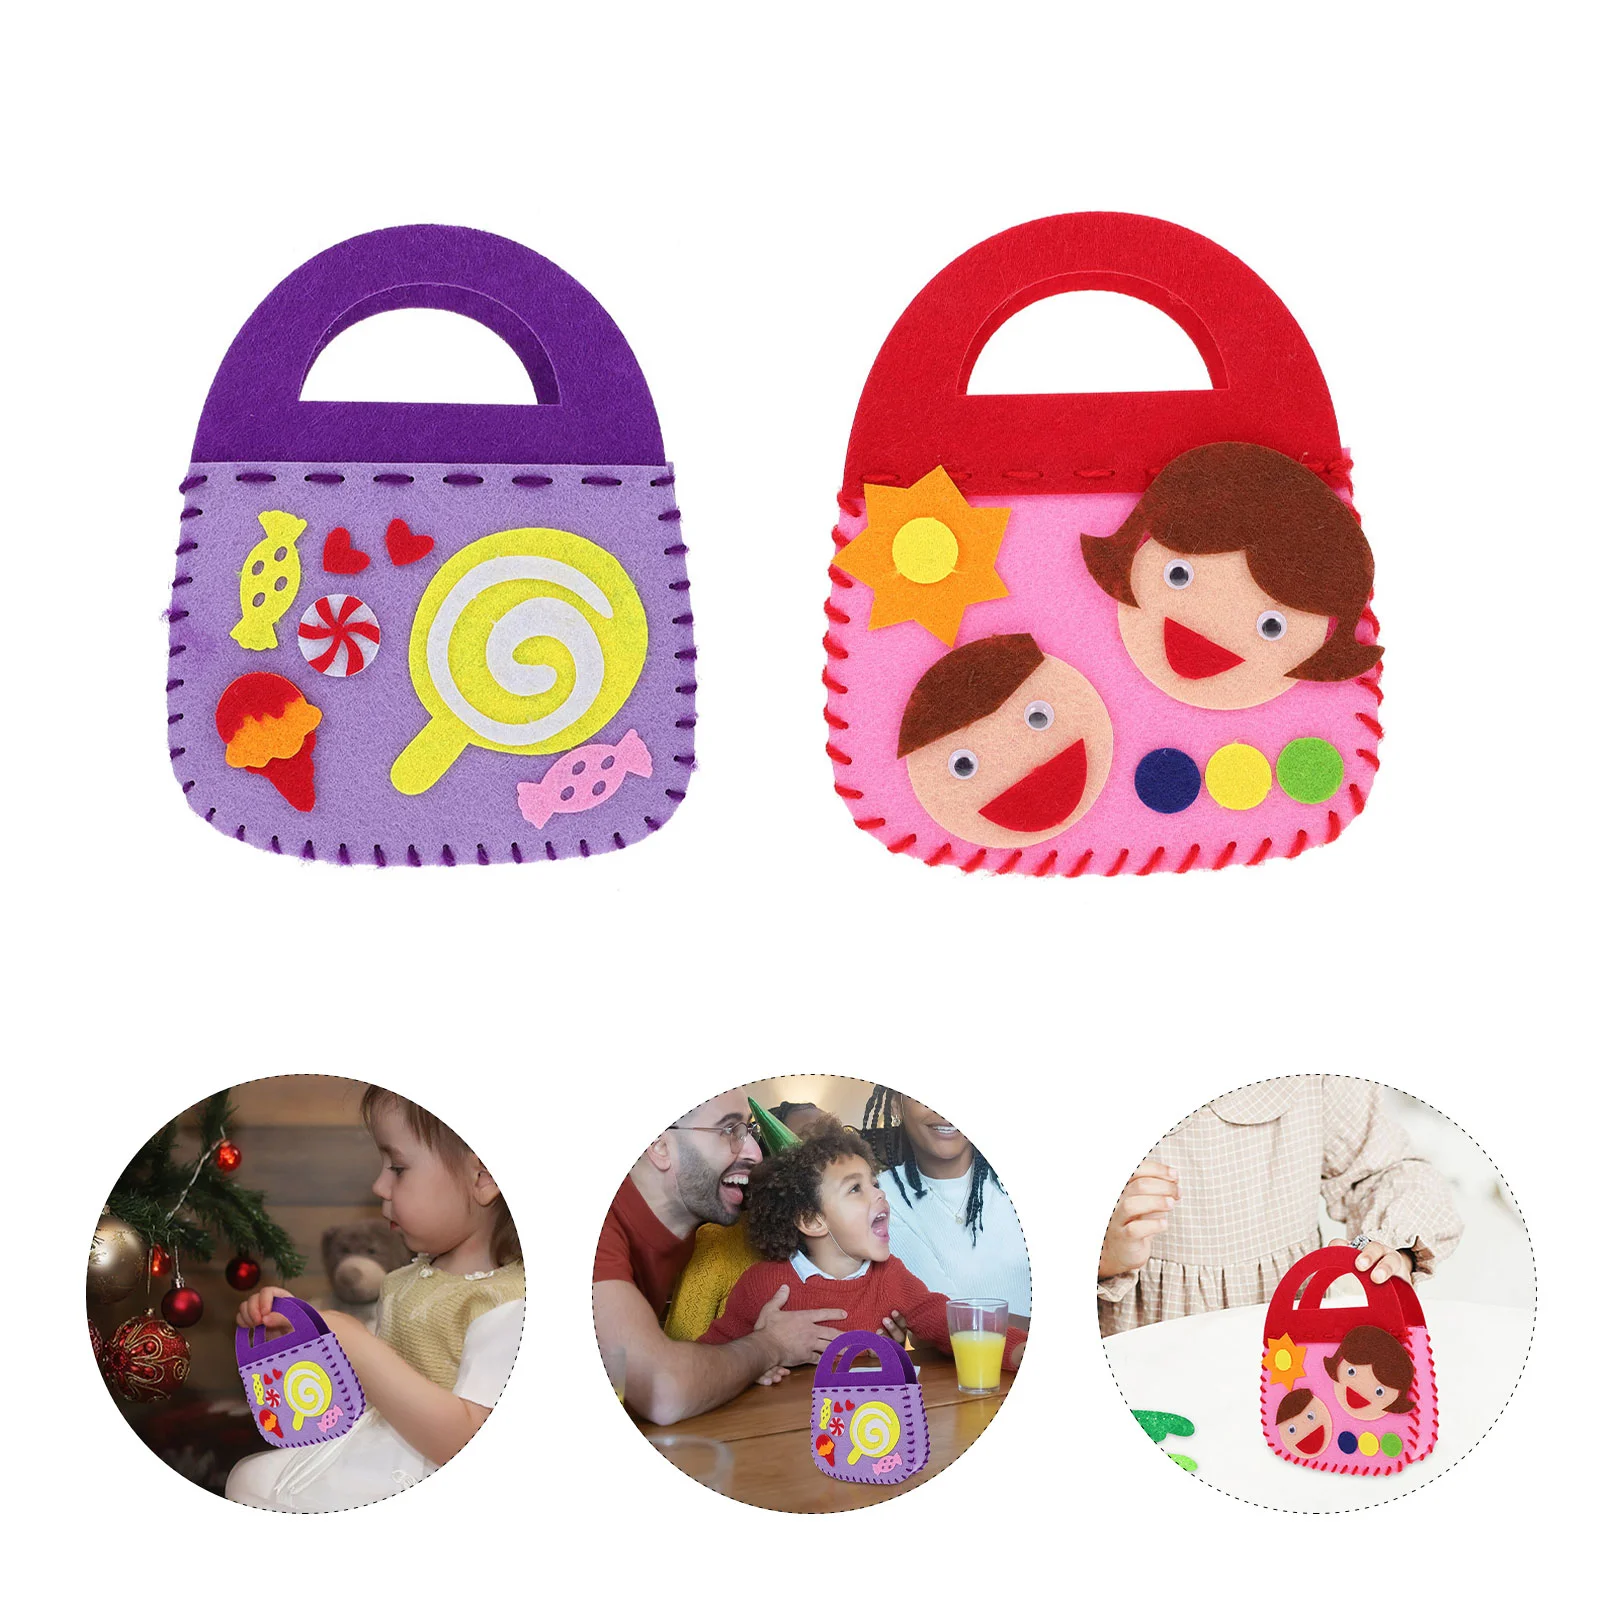 

4 Sets Bag Making Non- woven Bag Sewing Materials Handbag Knitting Supplies Sewing Craft for DIY ( Random Style )